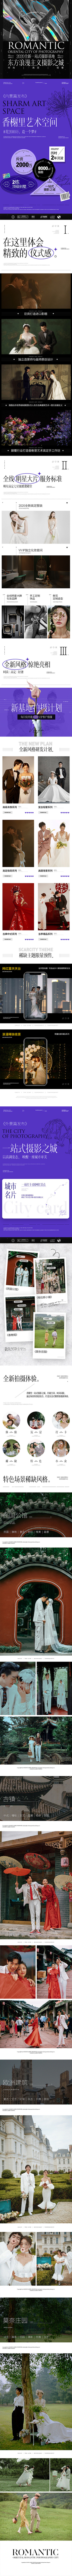 #成都金夫人婚纱摄影网页专题设计#基地包...